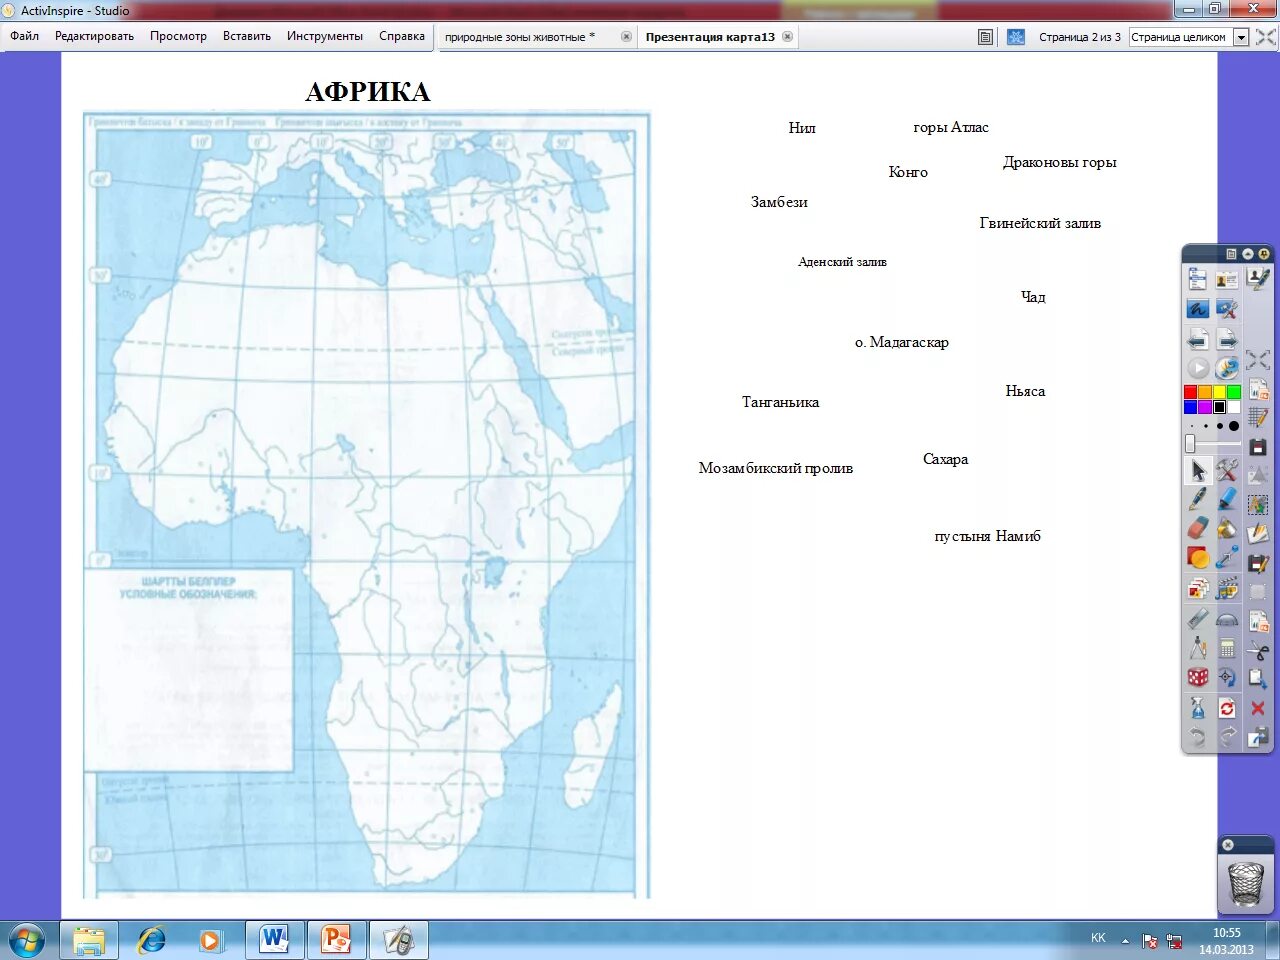 Береговая линия африки океаны. Номенклатура Африка 7 класс география на контурной карте. Номенклатура Африки 7 класс на контурной карте. Номенклатура Африки 7 класс география на карте. Номенклатура Африка 7 класс география на контурной карте Африки.